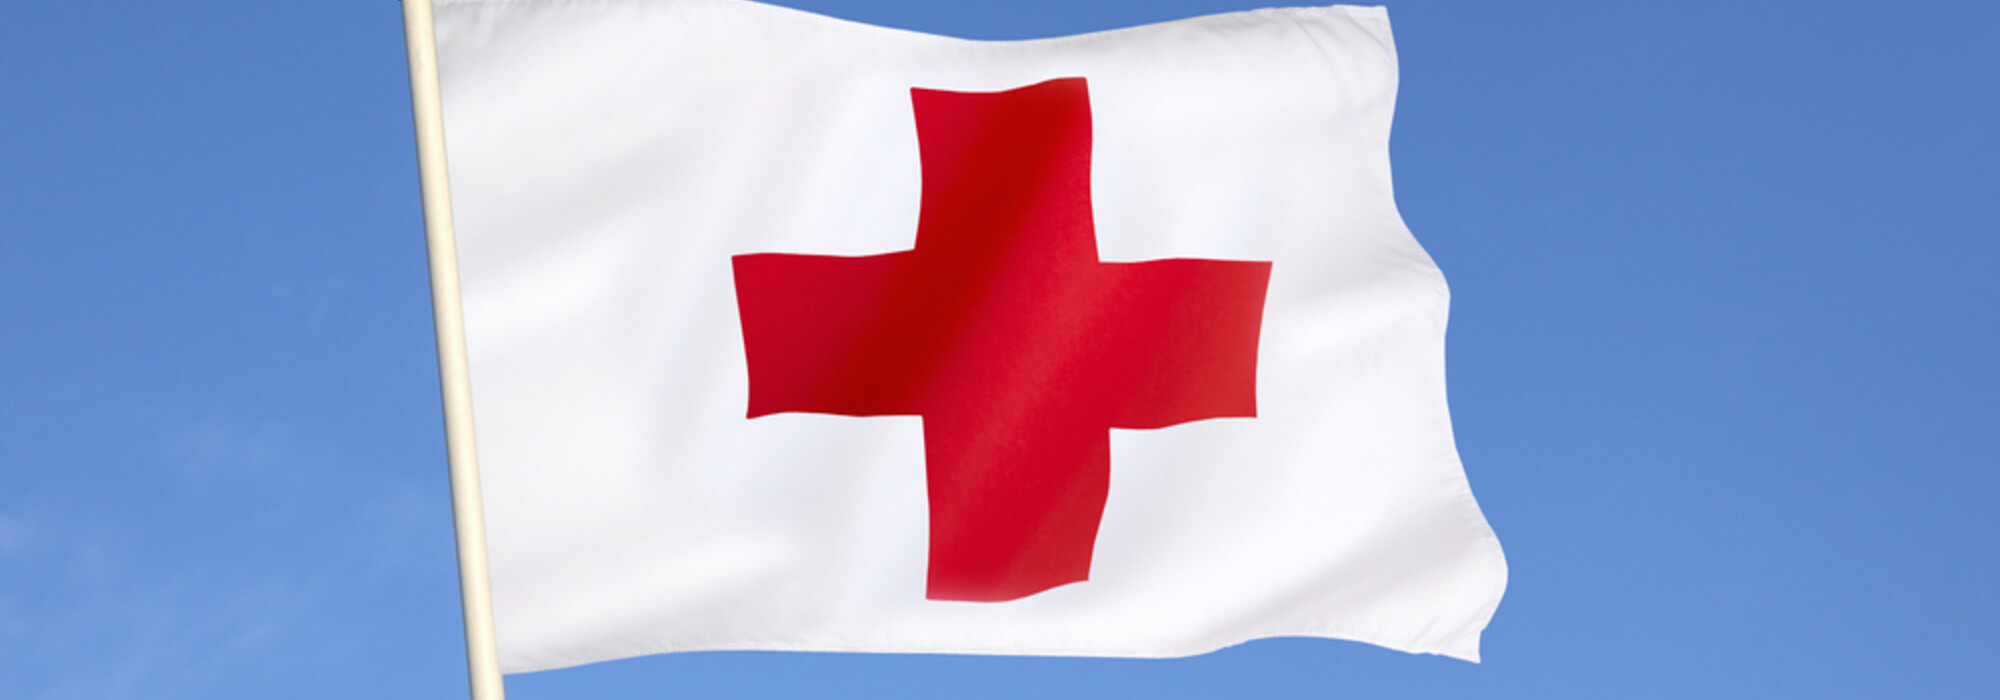 Schweizerisches Rote Kreuz Kanton Zürich